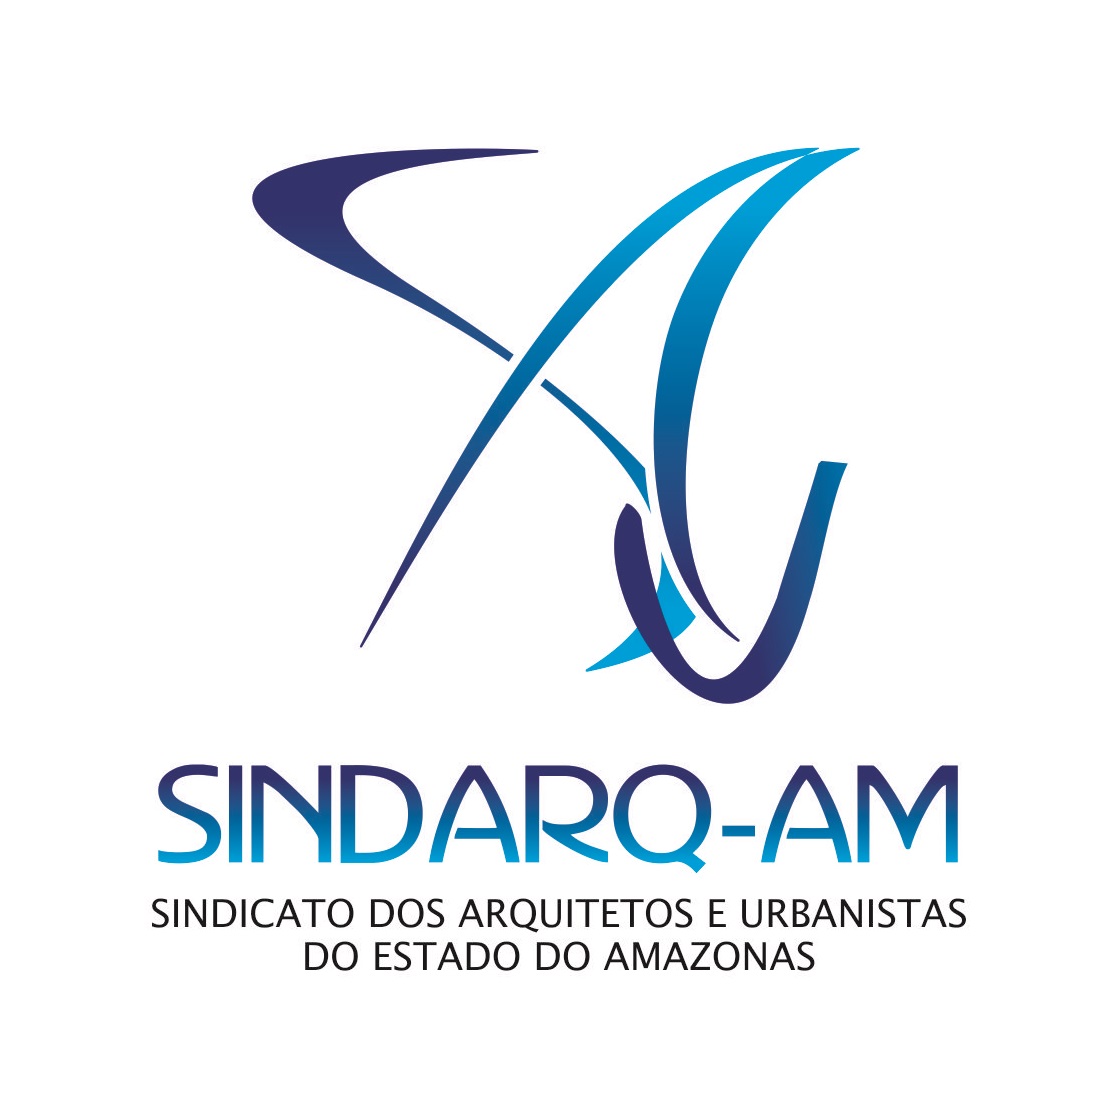 SINDARQ-AM elege nova diretoria para a gestão 2017-2019 